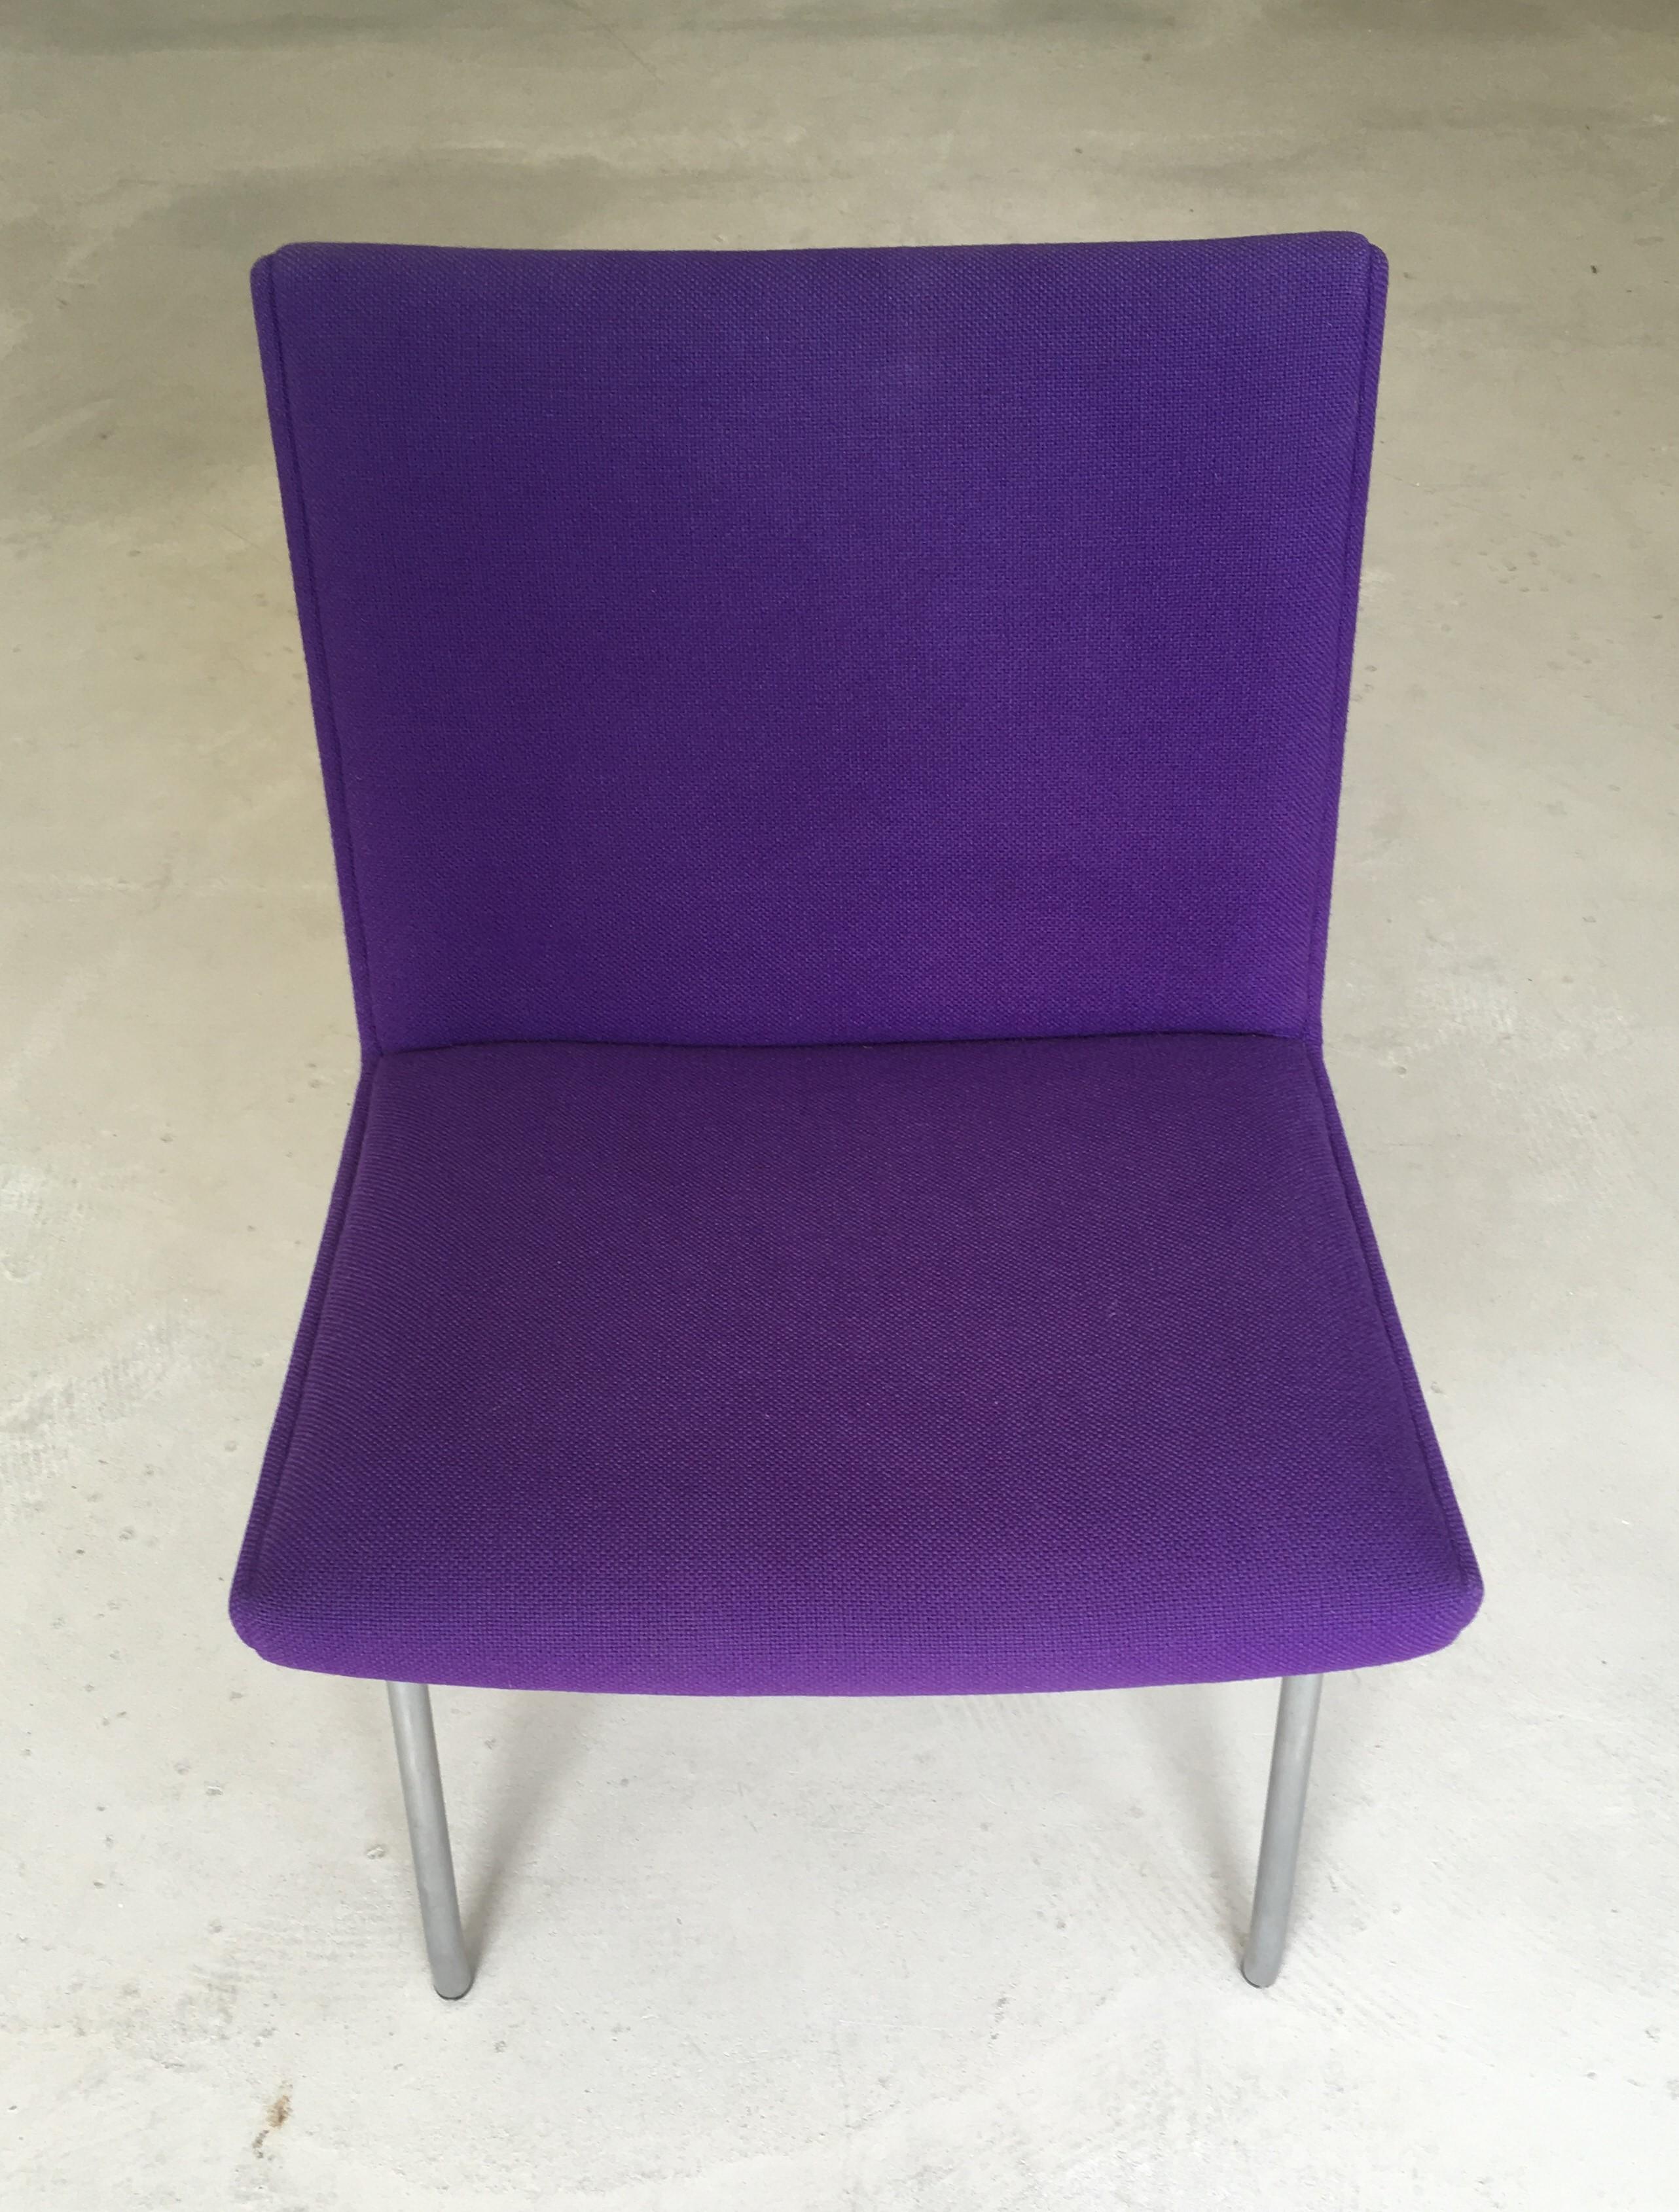 Dänischer Hans J. Wegner Flughafenstuhl von AP. Gestohlen, neu gepolstert mit lila Stoff

Außergewöhnlicher moderner Stuhl. Seinerzeit 1958 entworfen, auf Stahlrohrrahmen. Die Sitze wurden mit lila Kvadrat Hallingdal 65 neu gepolstert.

Obwohl